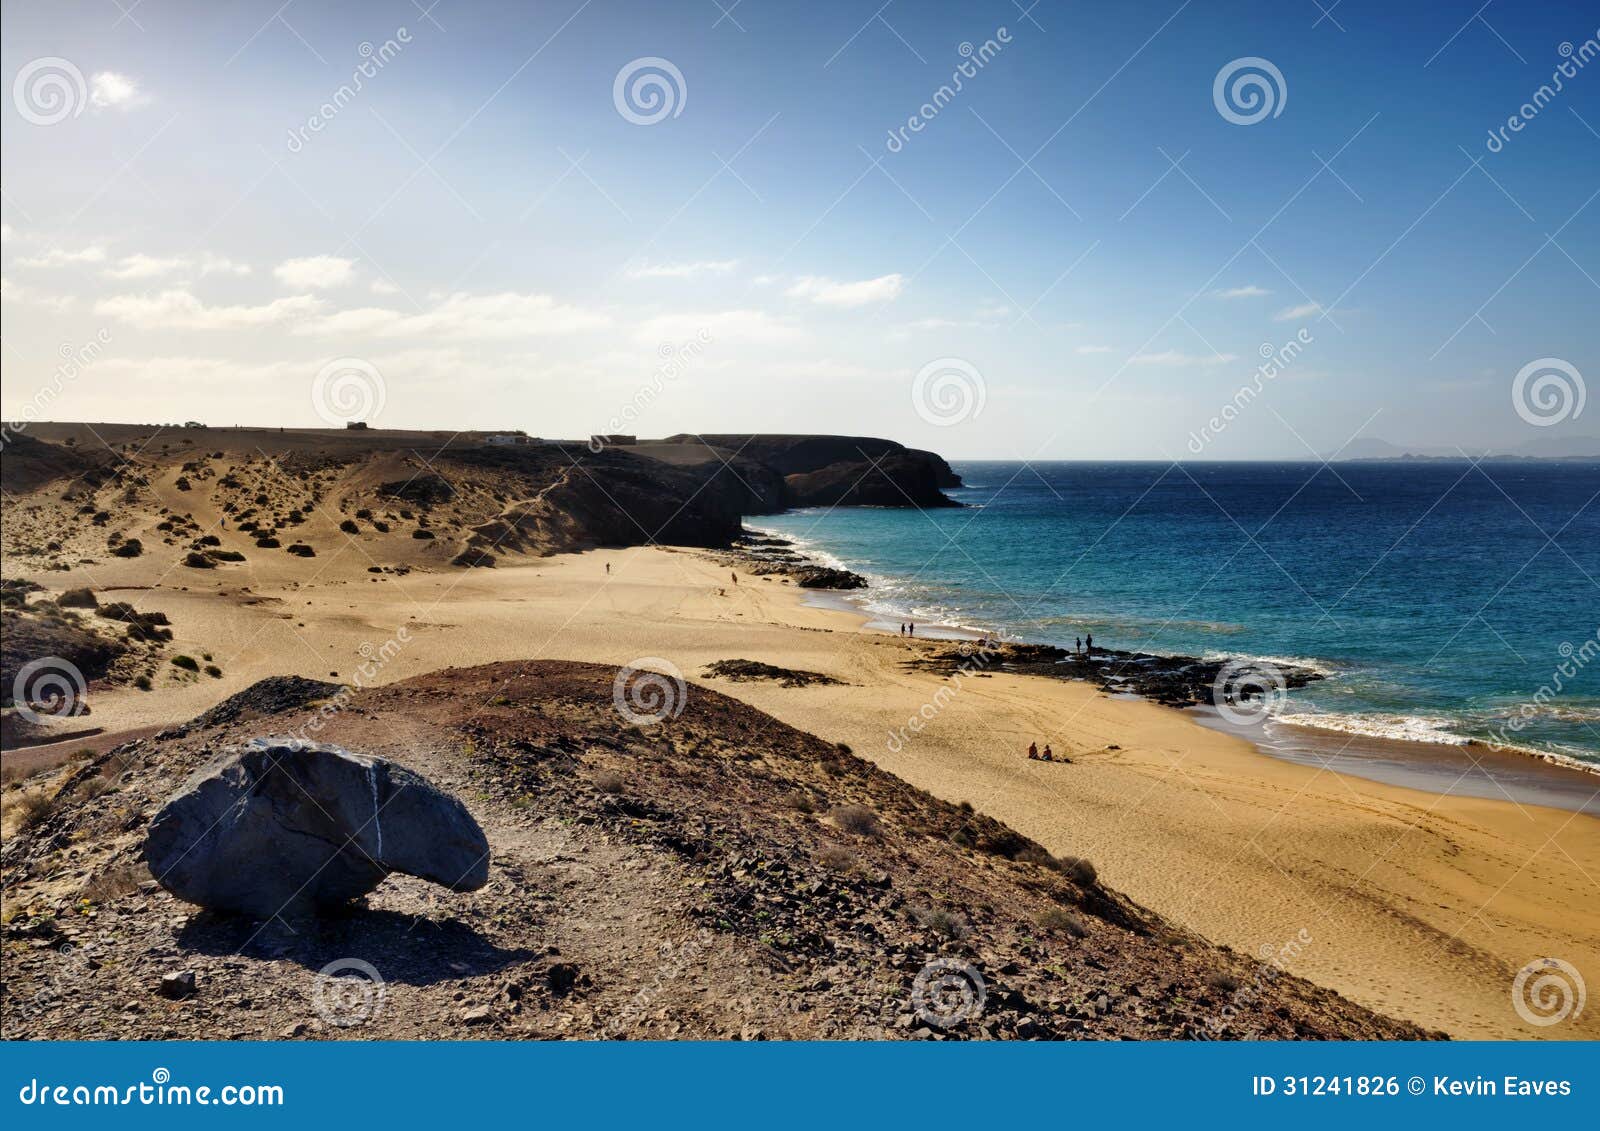 Sceniczny widok Papagayo plaża na wyspie Lanzarote, wyspy kanaryjska, Hiszpania.